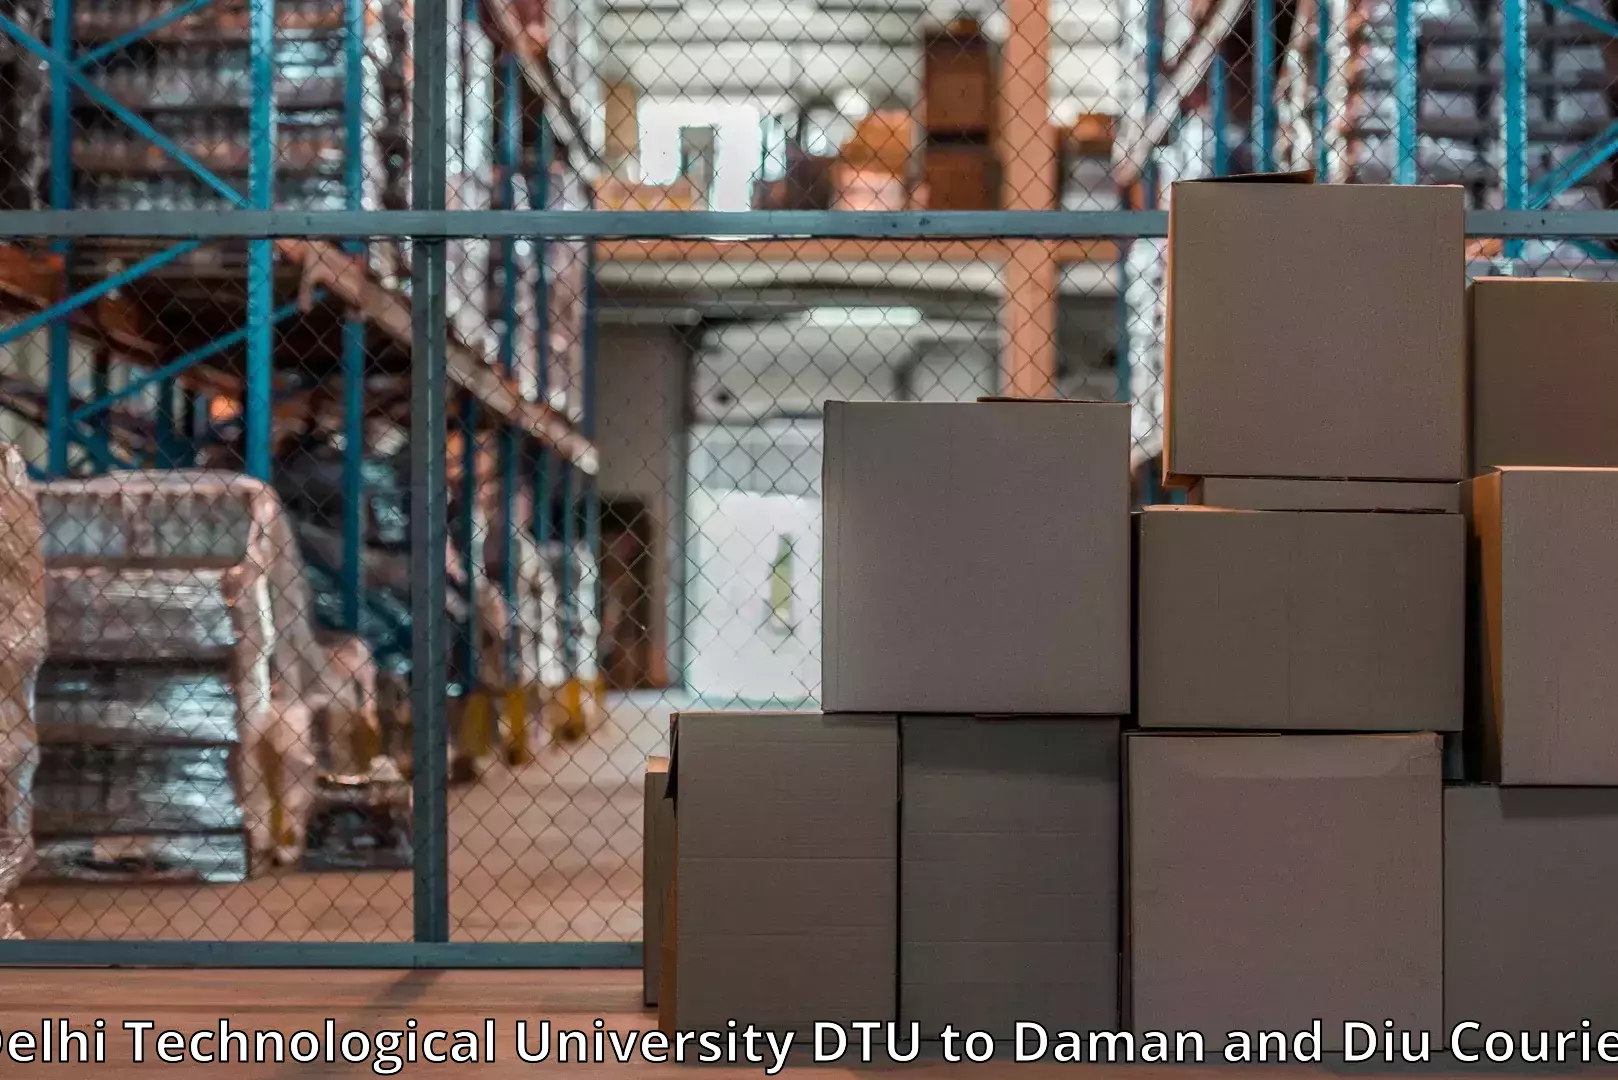 Furniture moving experts Delhi Technological University DTU to Diu